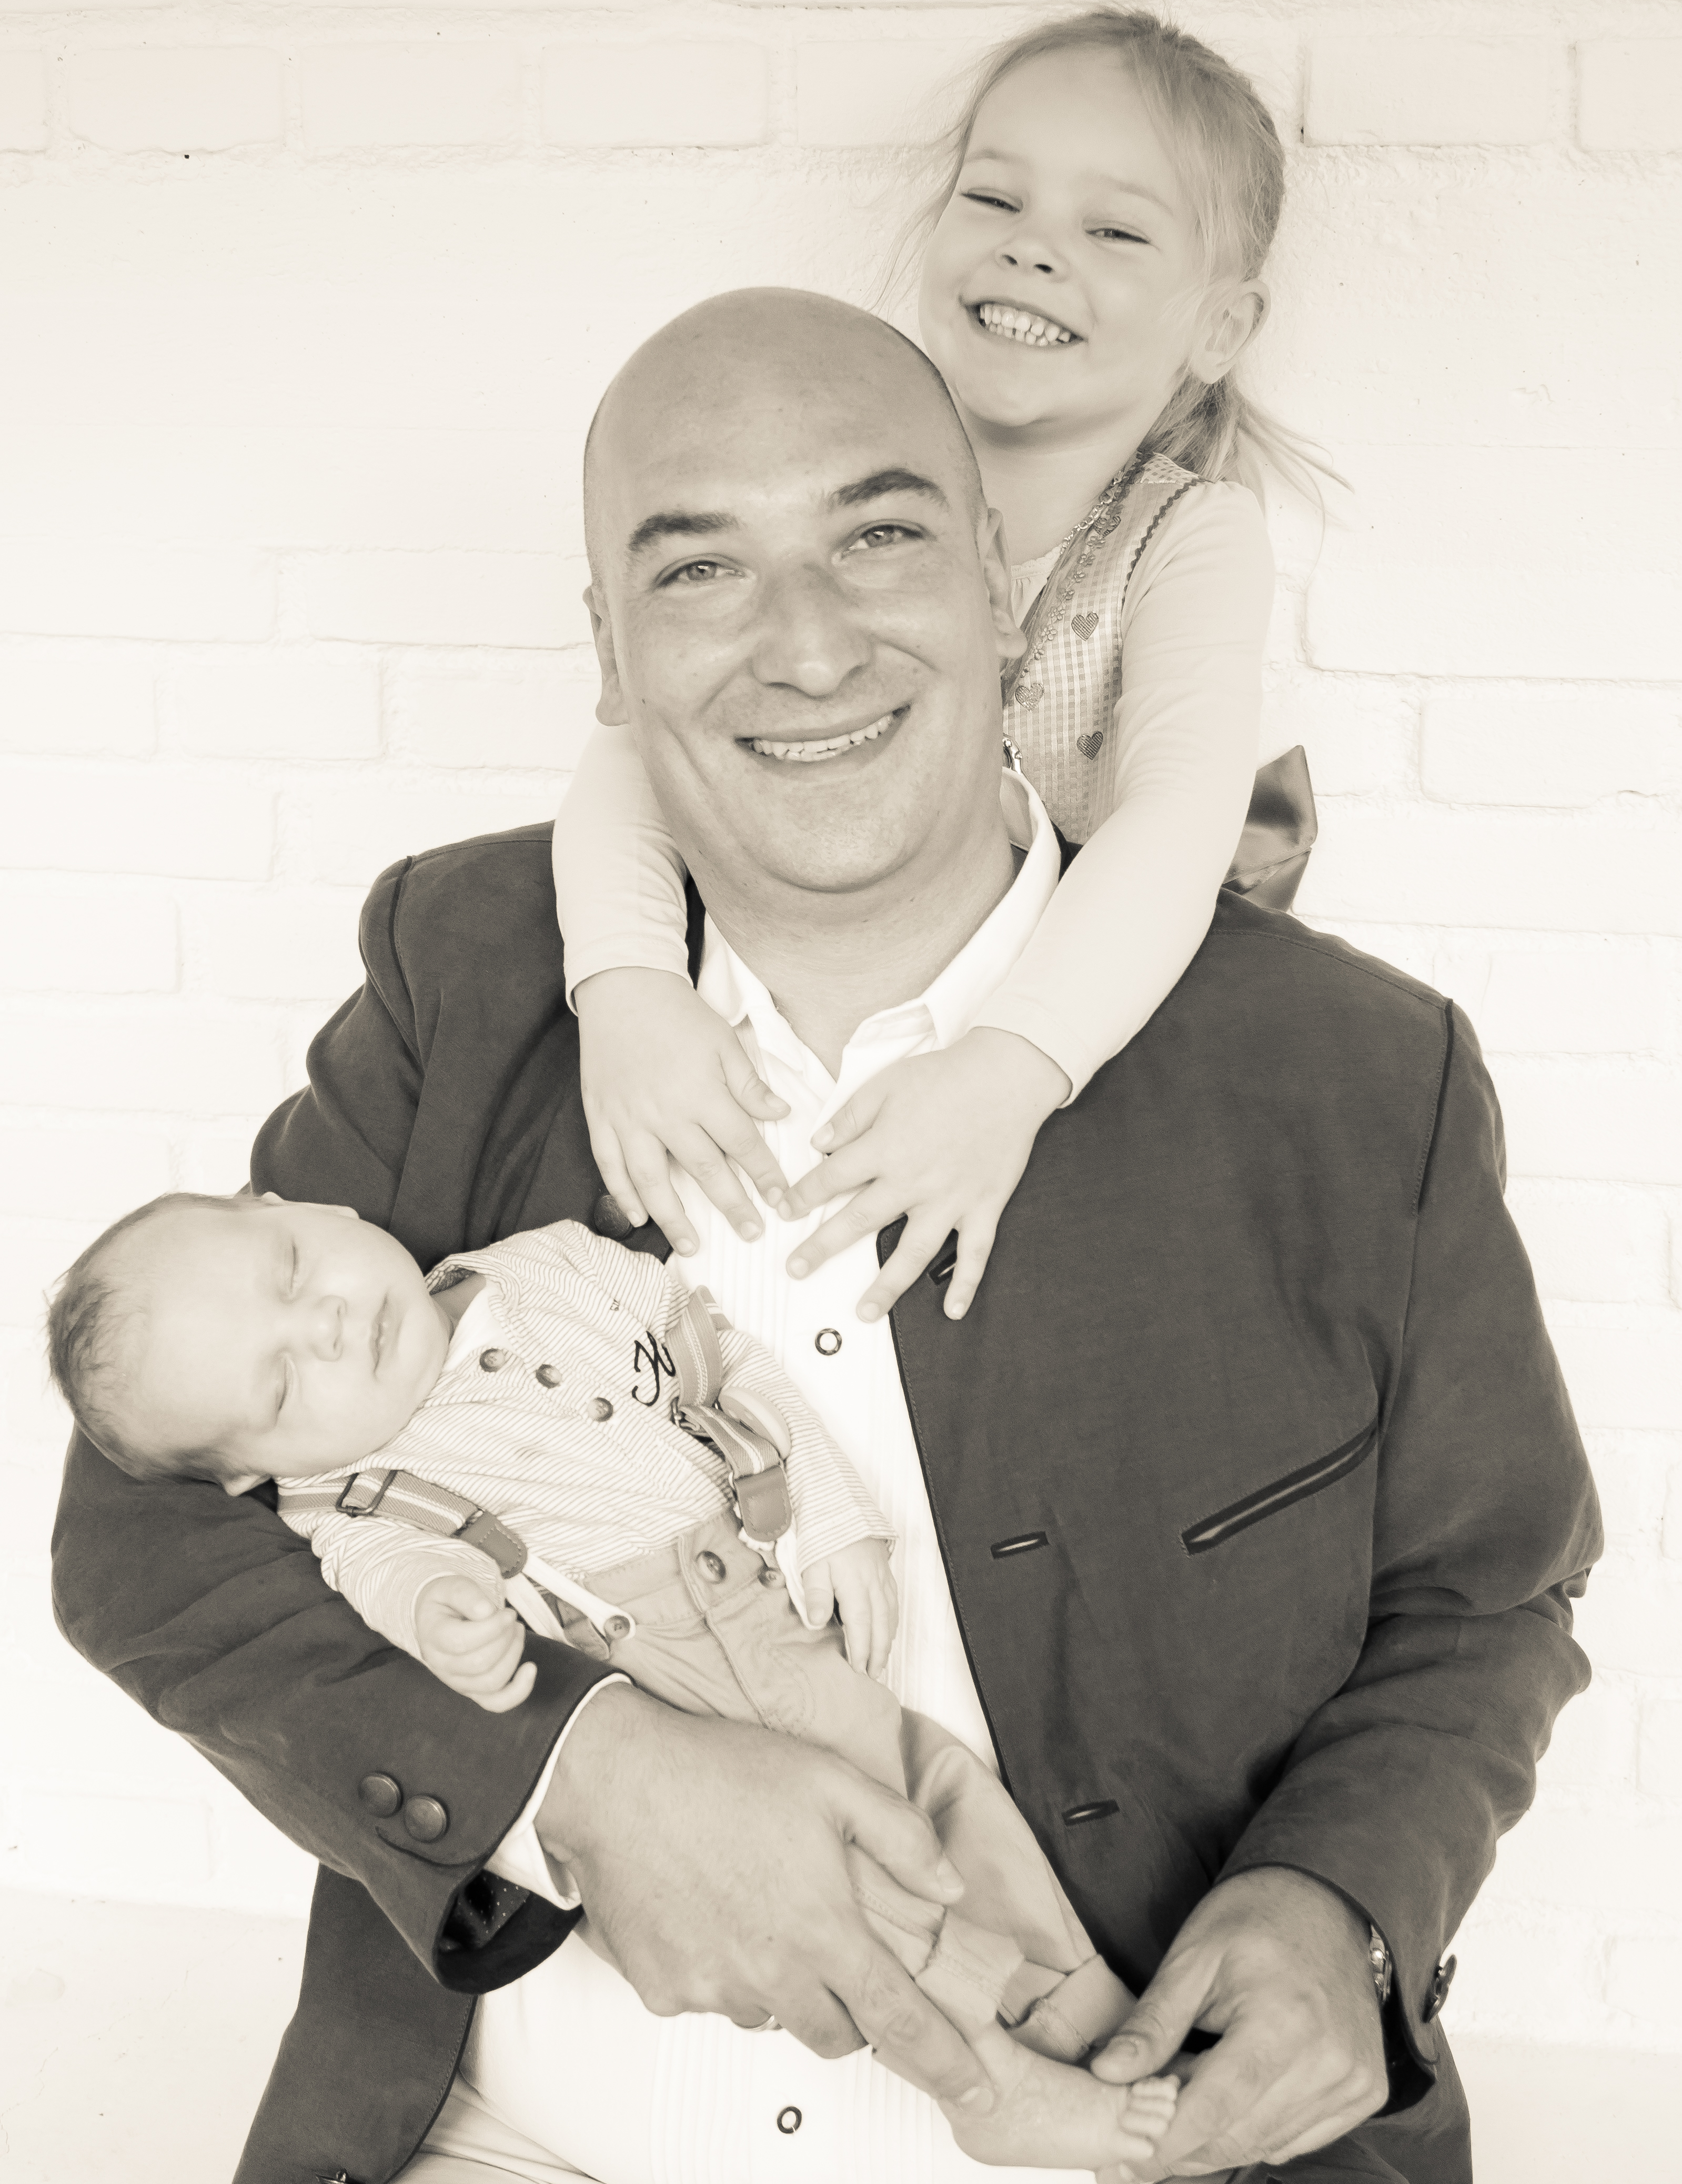 Tobias Dreilich von KidsConcept ist selbst zweifacher Vater und führt seine Agentur als Familienunternehmen gemeinsam mit seiner Frau und seinen Eltern.